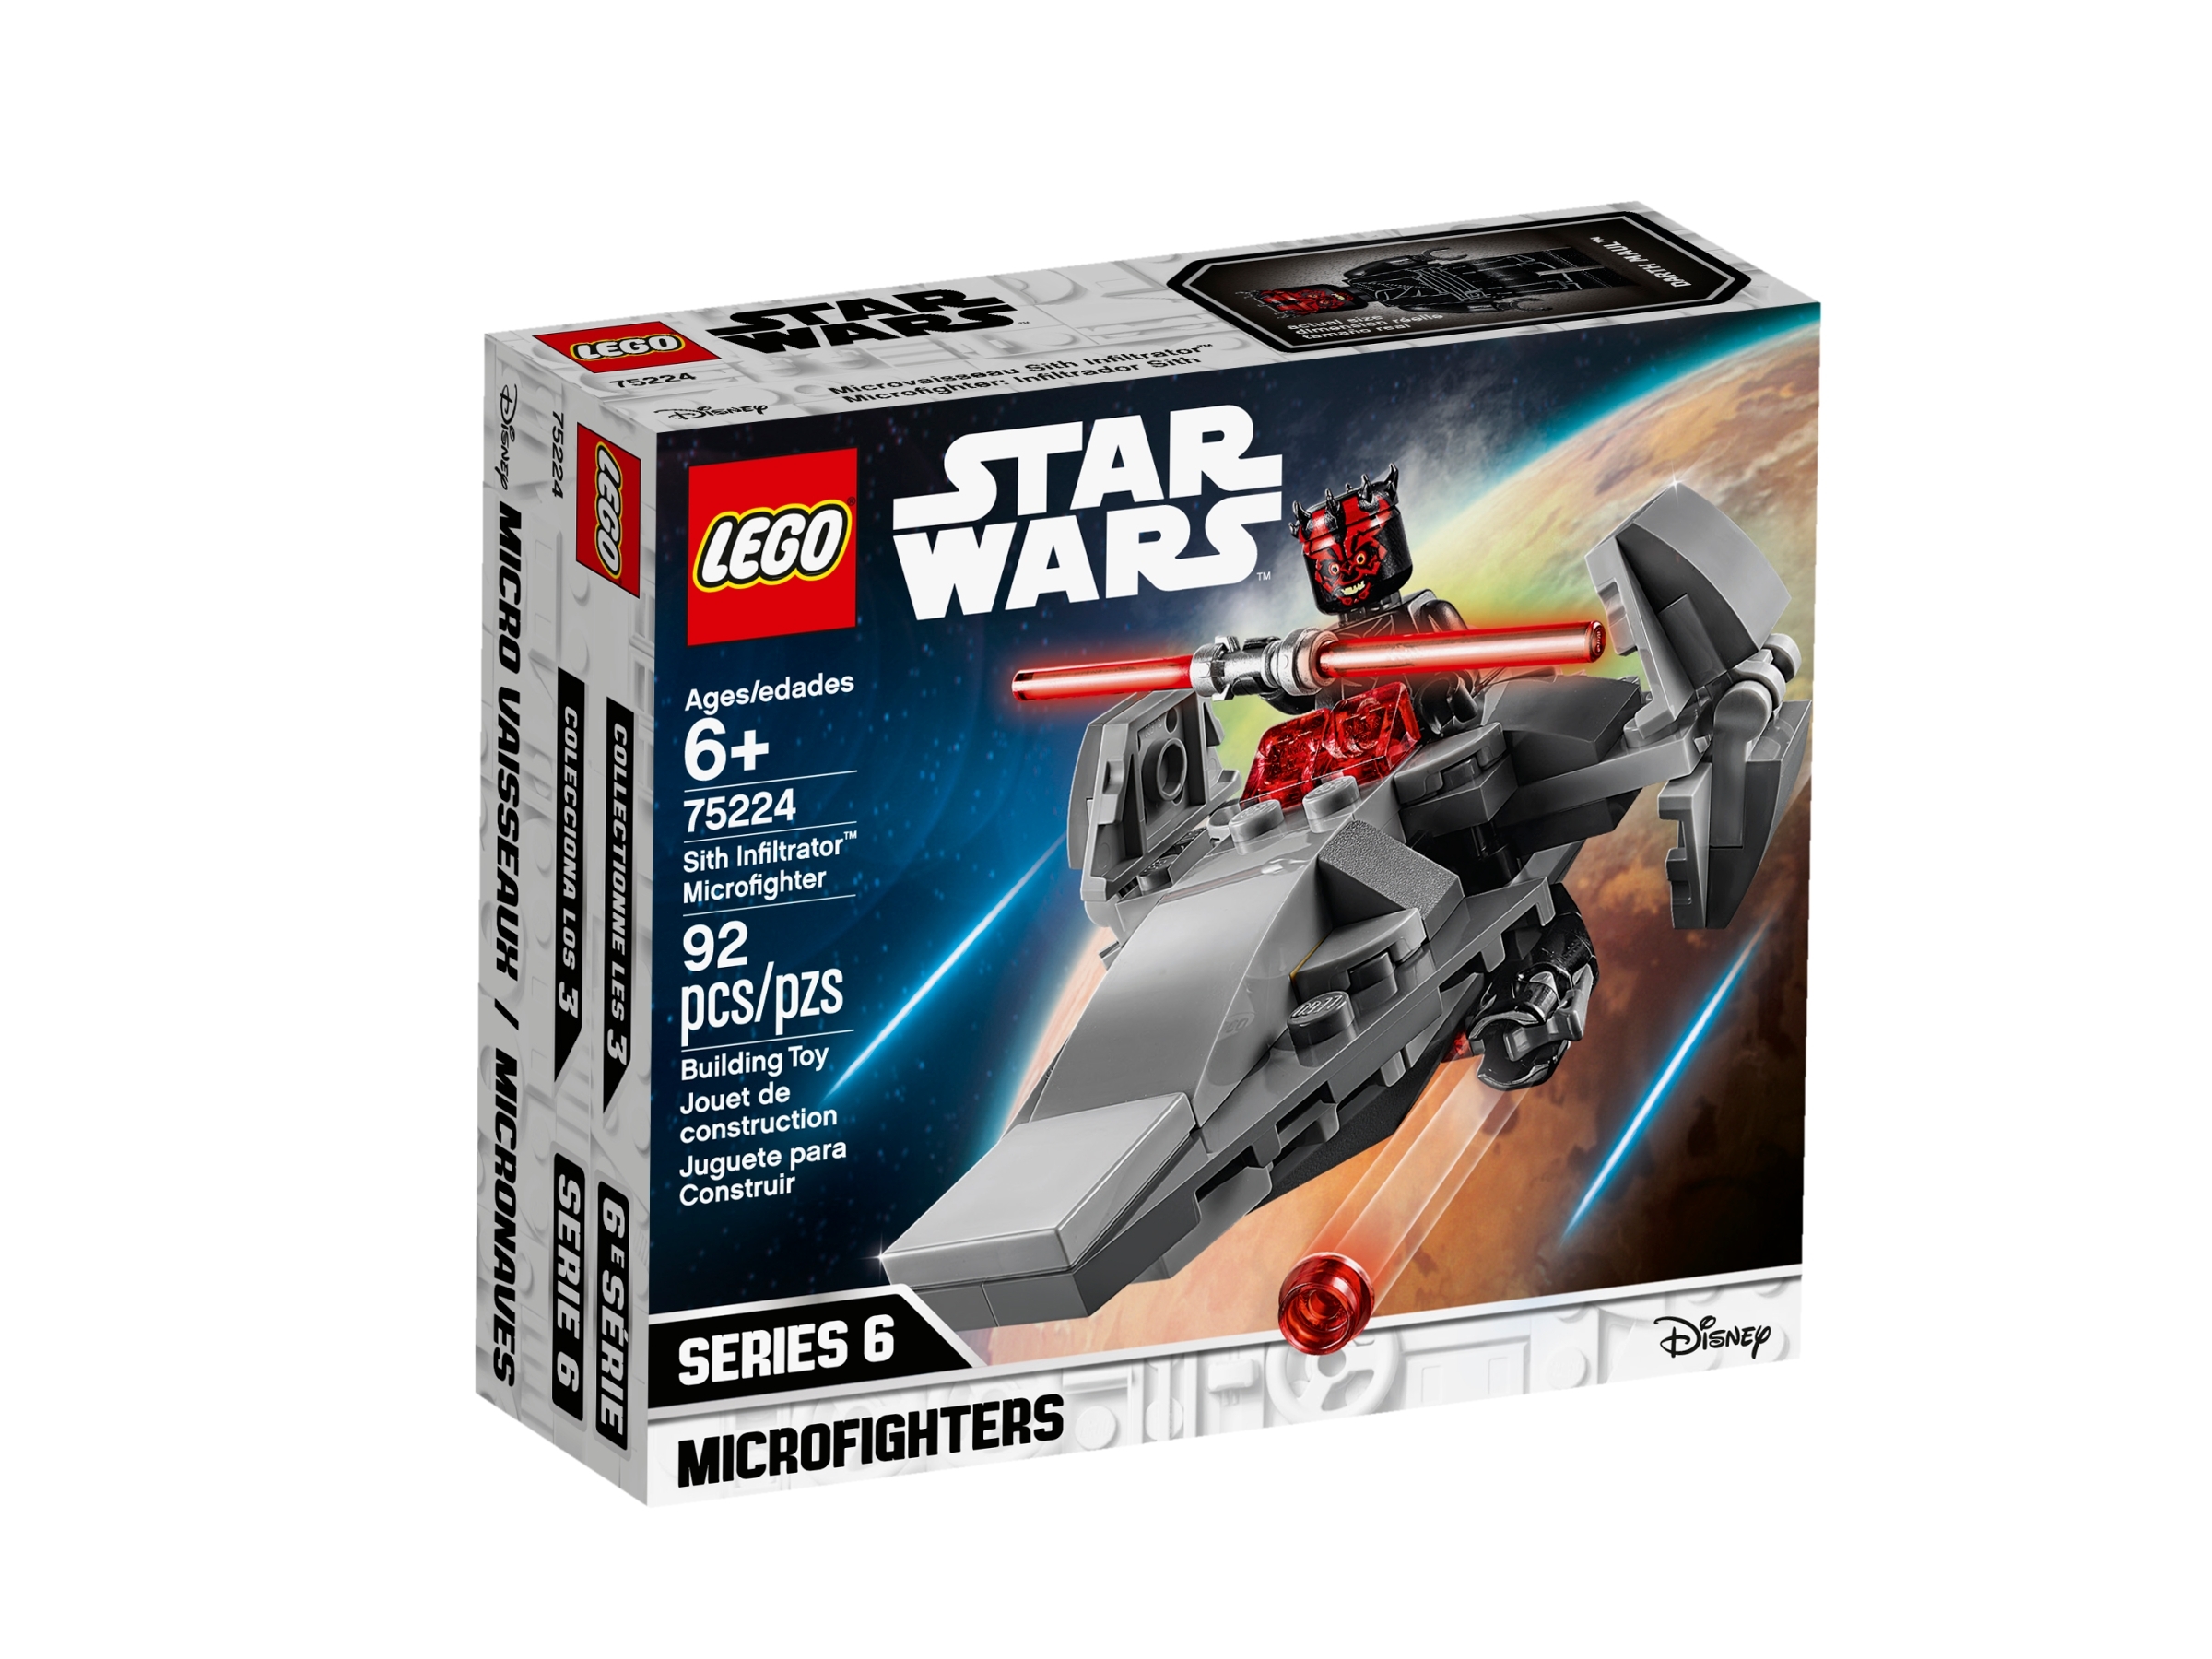 LEGO STAR WARS  MICROFIGHTERS SERIES 6  Ref-75223-75224  NUEVO A ESTRENAR 